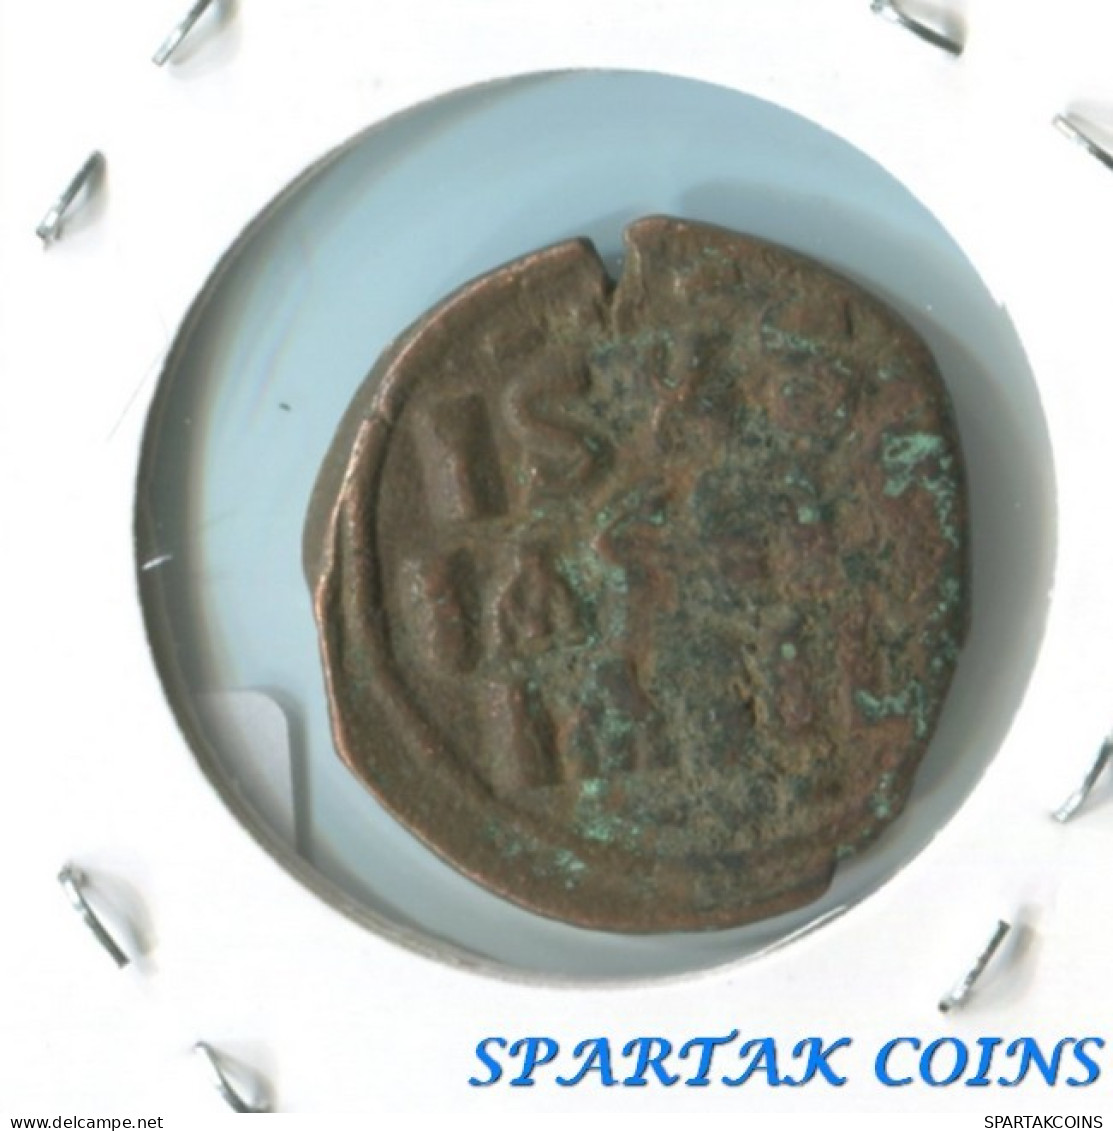 Authentic Original Ancient BYZANTINE EMPIRE Coin #E19586.4.U.A - Bizantinas